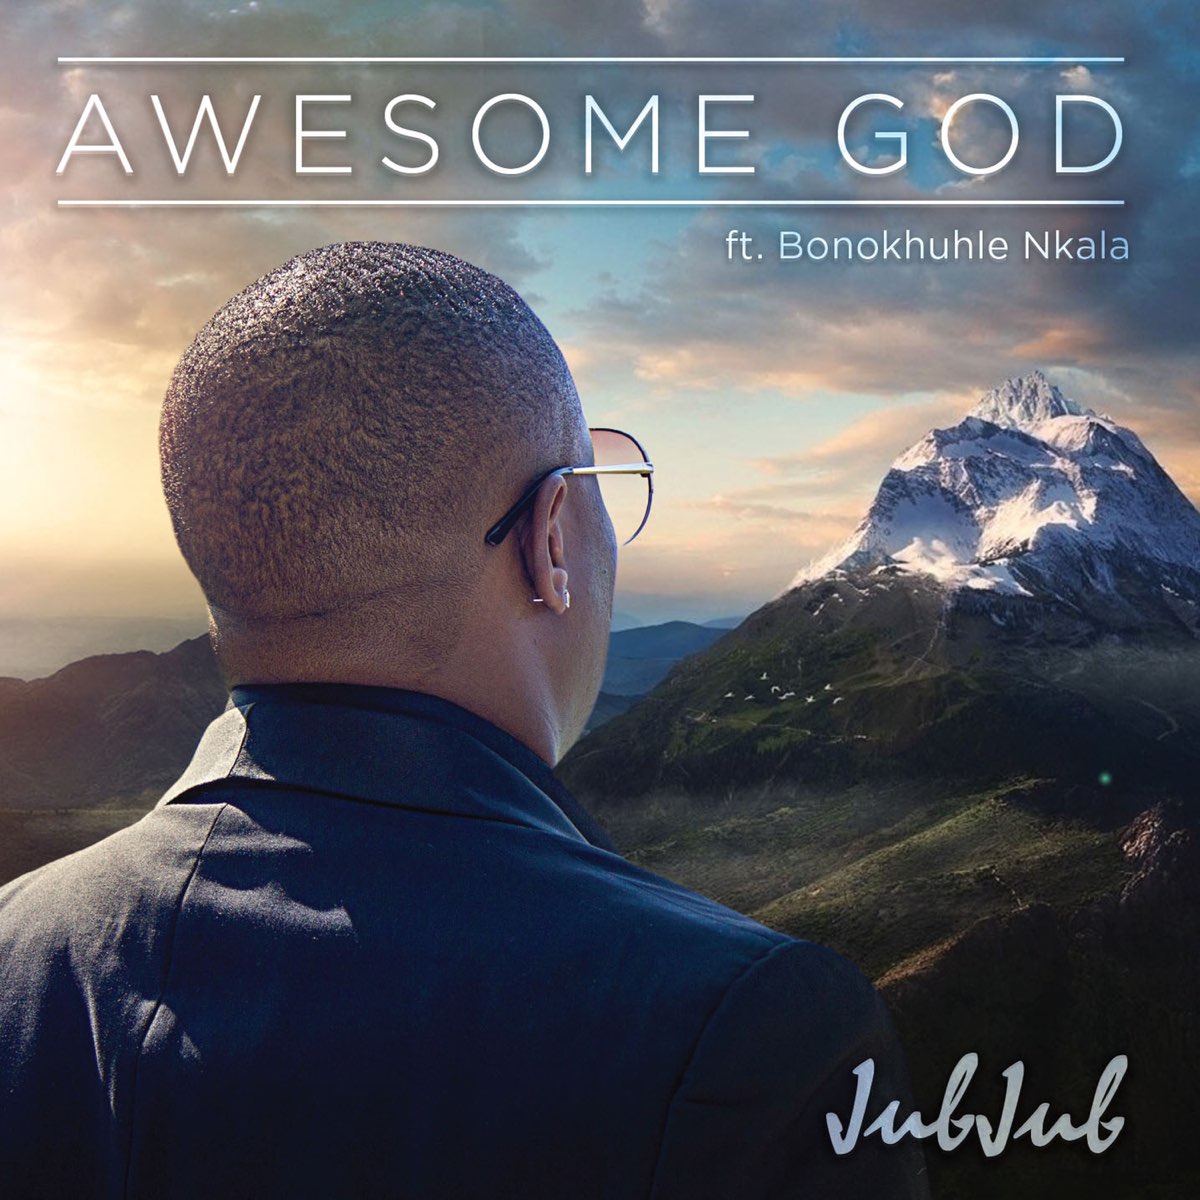 Awesome god. Nkala. My God is an Awesome God.